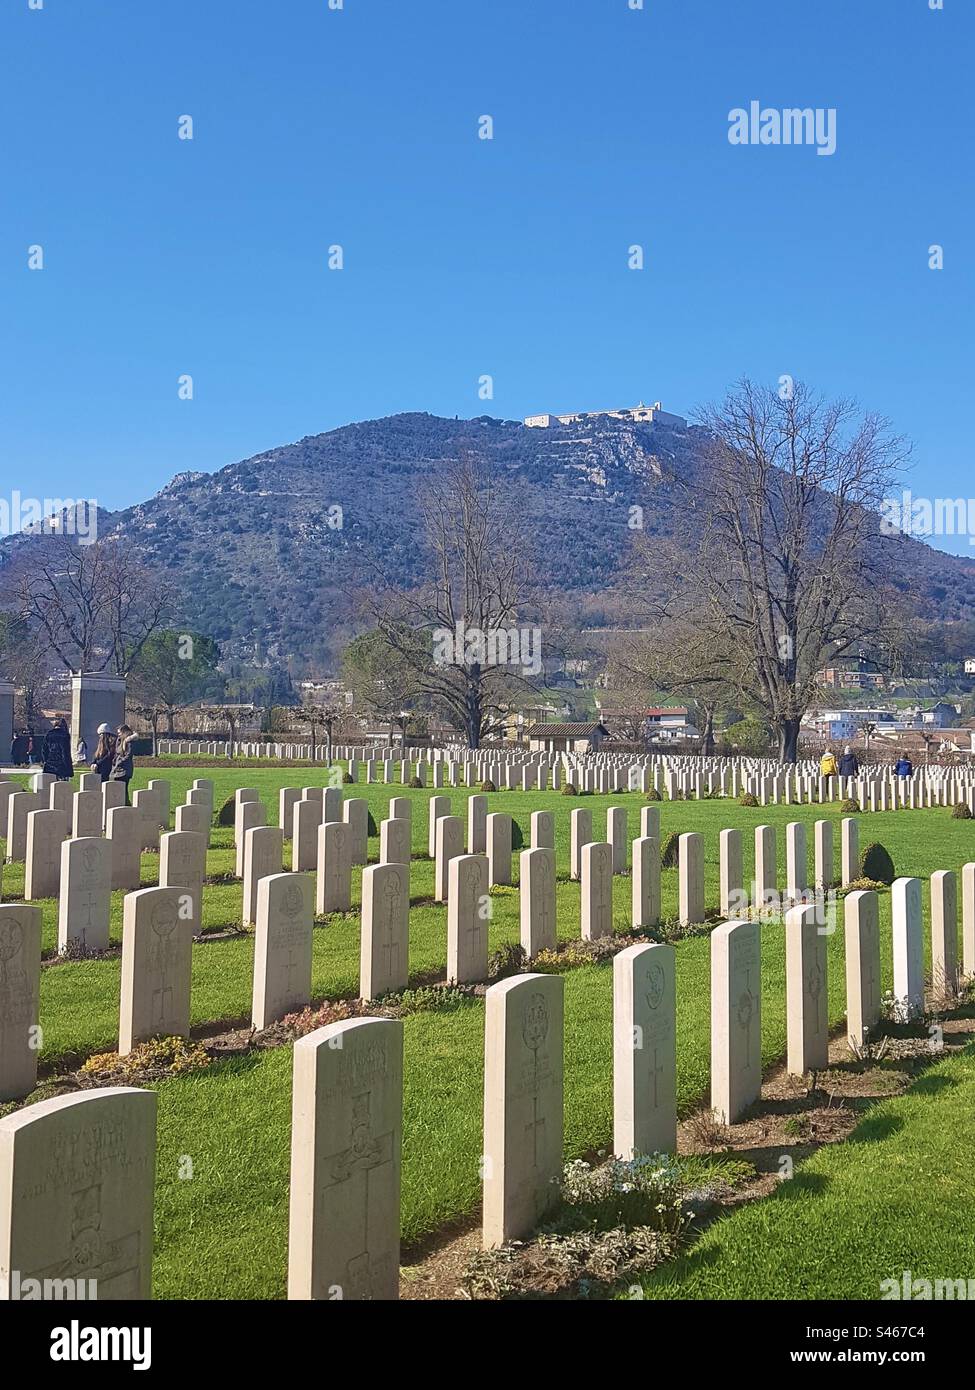 Le cimetière militaire de Monte Cassino pour les soldats britanniques et du Commonwealth morts lors de la bataille de Monte Cassino en Italie, pendant la Seconde Guerre mondiale. Banque D'Images